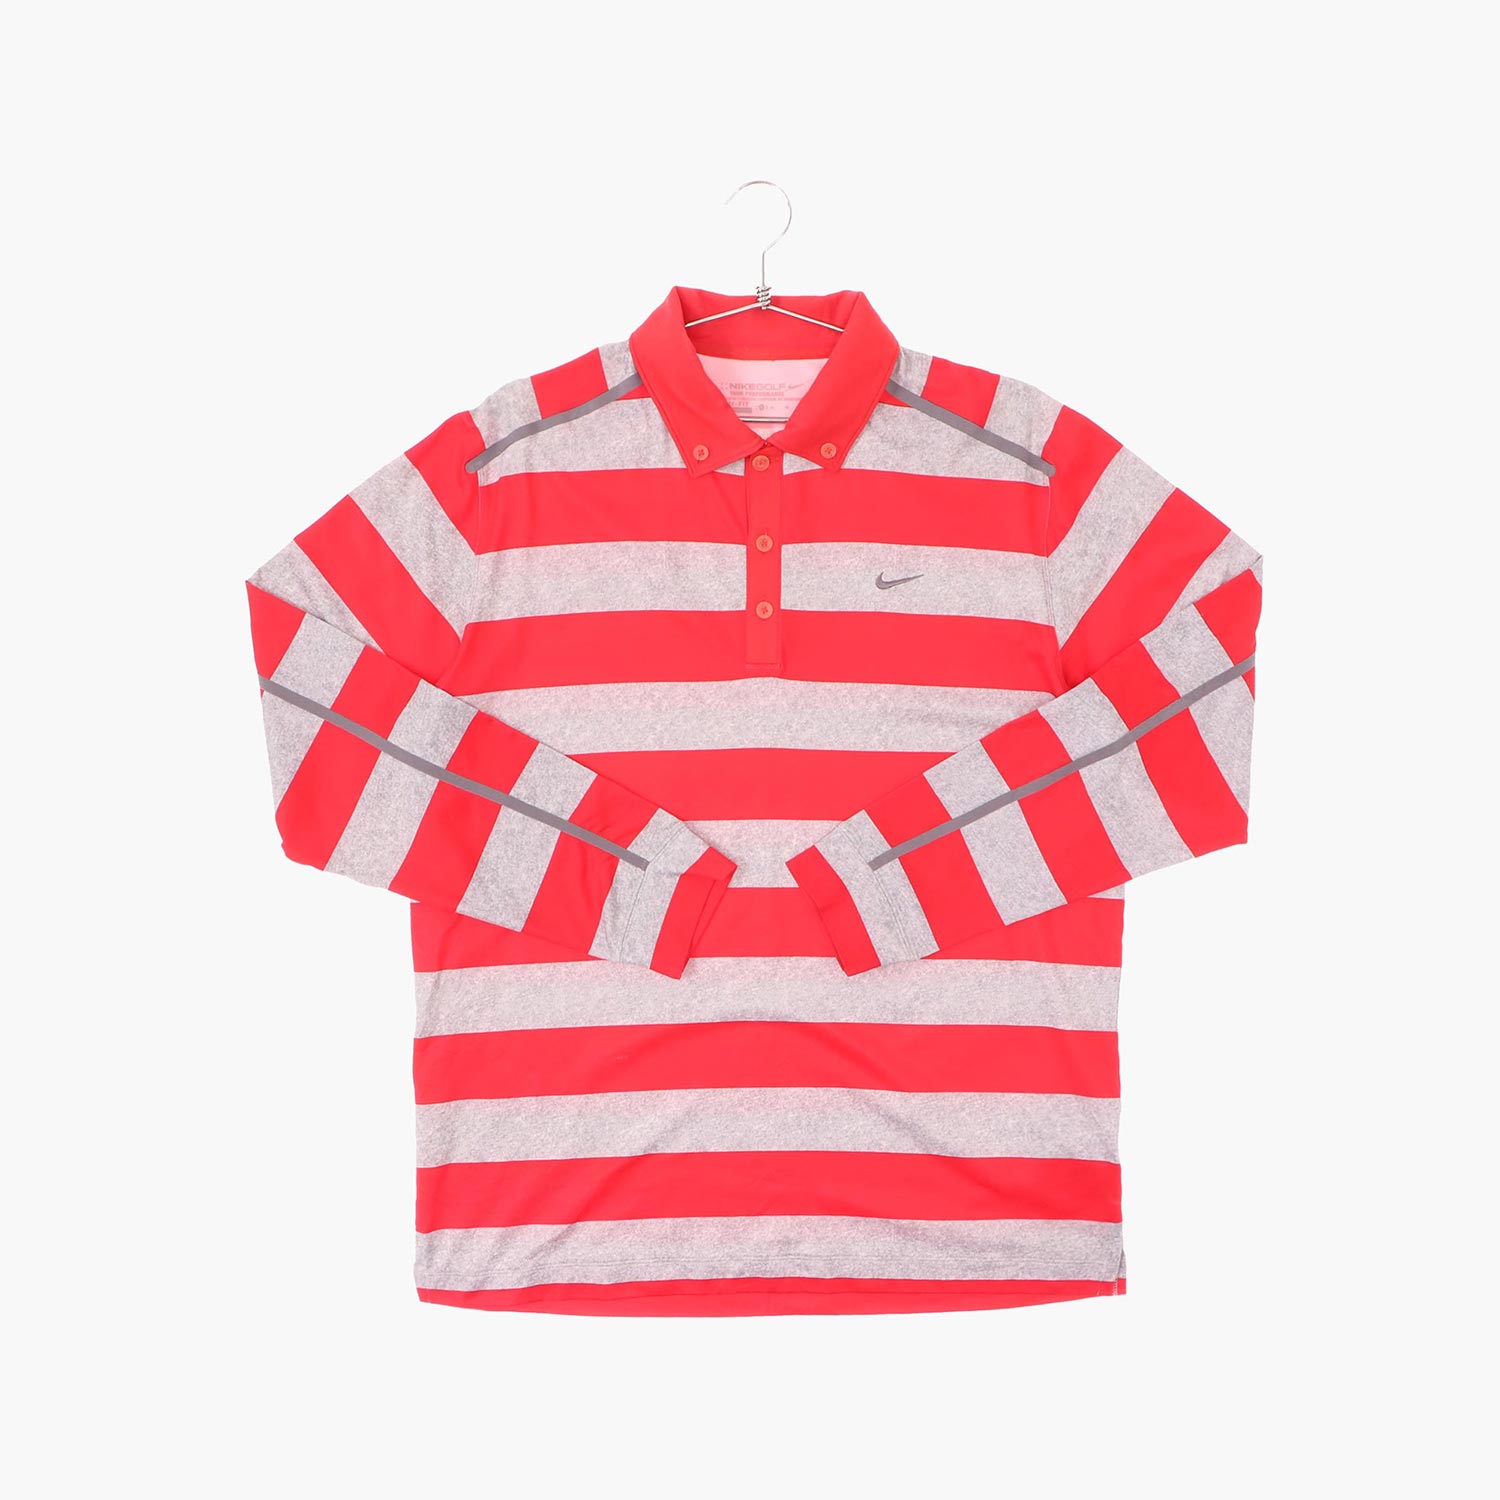 나이키 골프 폴리 스포츠 카라 티셔츠 공용 XL 빈티지플러스